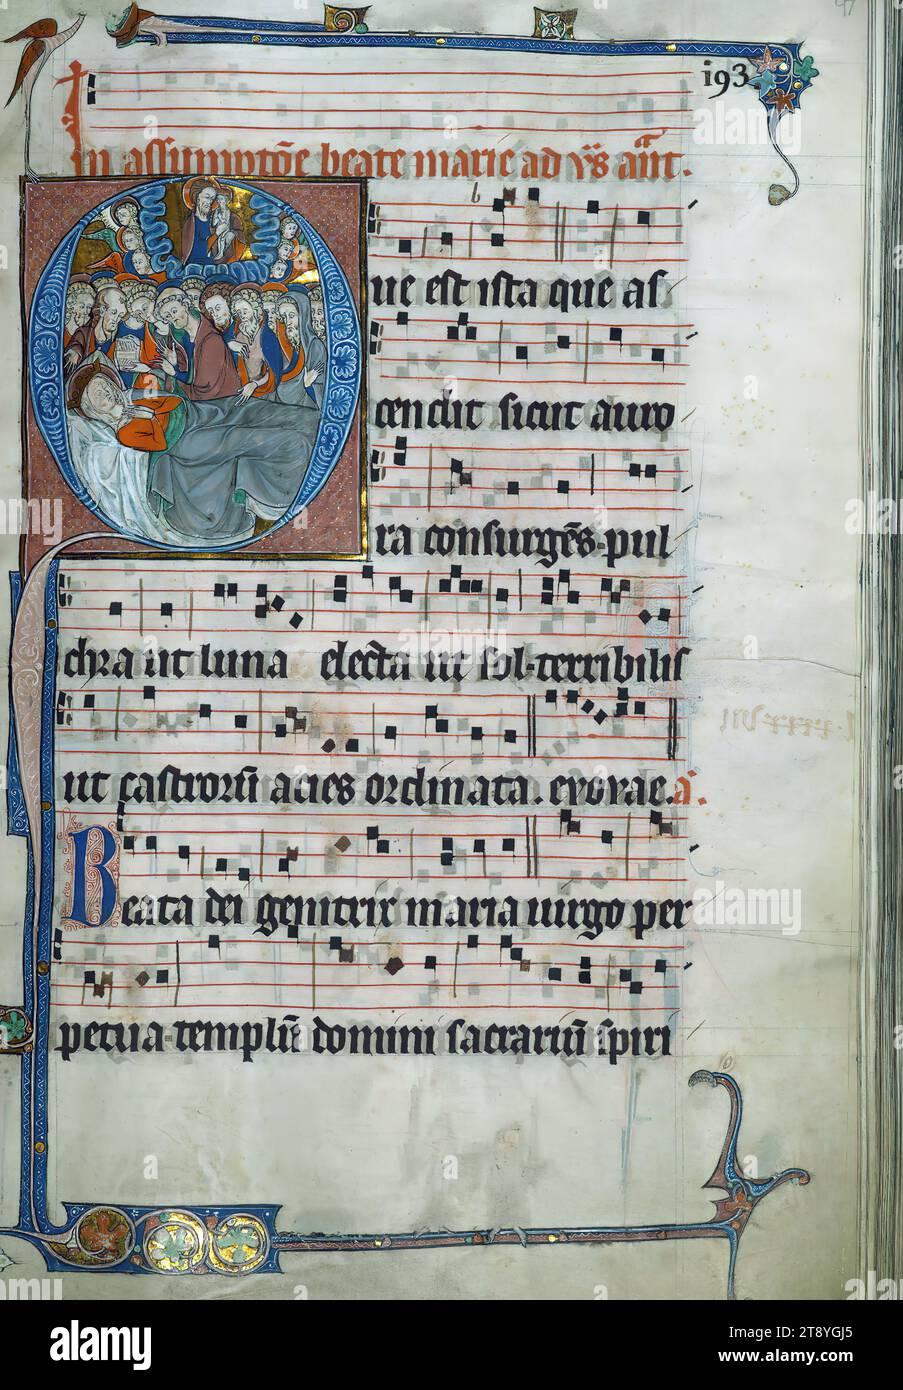 Beaupre Antifonario, Vol. 2, morte della Vergine, Historiated Initial 'Q', 6 linee di musica e testo alternati per un totale di 3 linee combinate Foto Stock